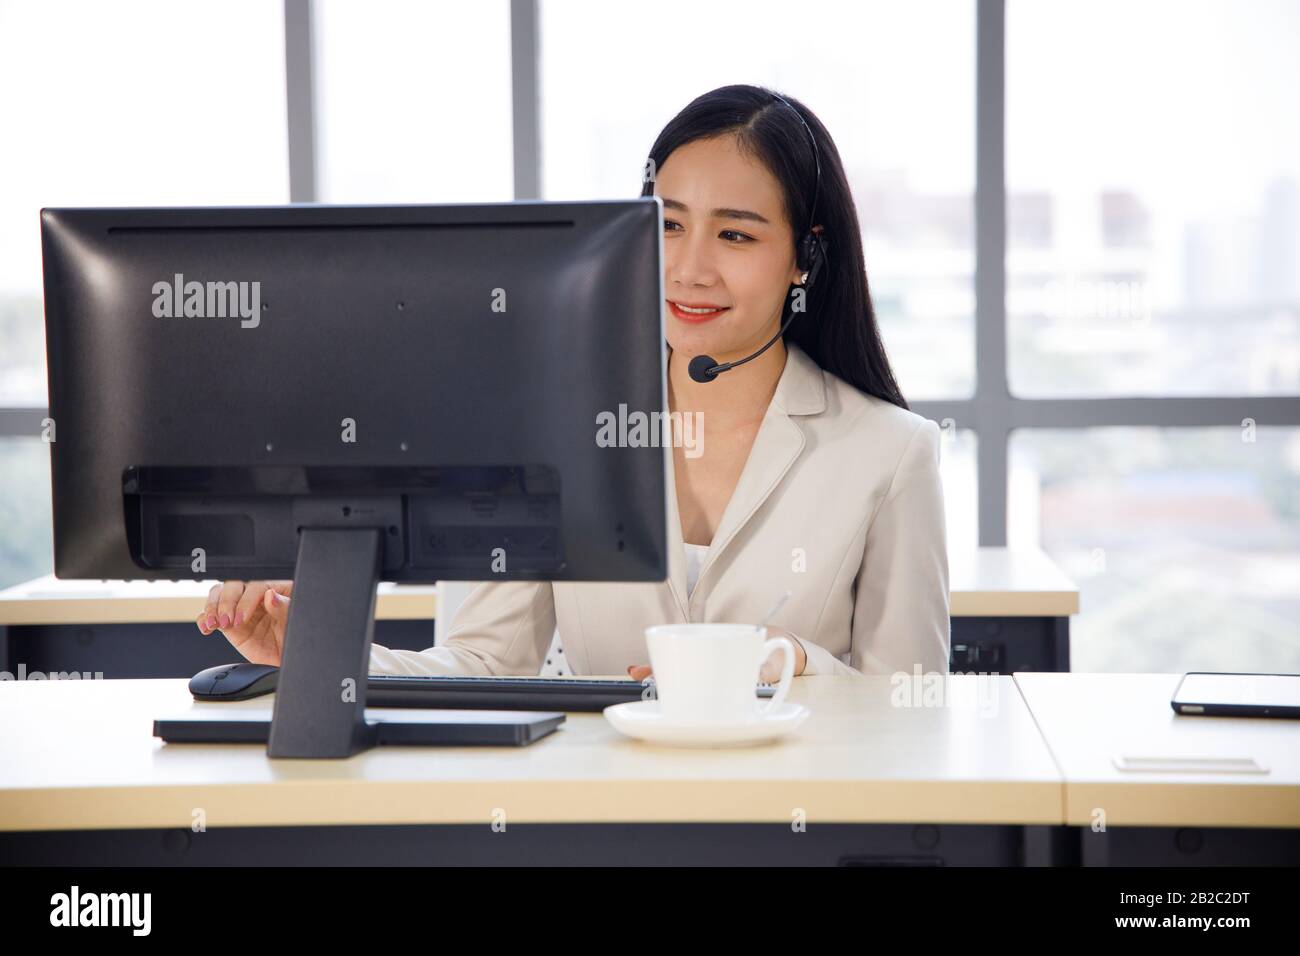 Die asiatische Callcenter-Betreiberin konzentriert sich auf ihre Arbeit im Personal Computer. Konzept für Kundenservice, Lifestyle im Büro, Mitarbeiter. Stockfoto